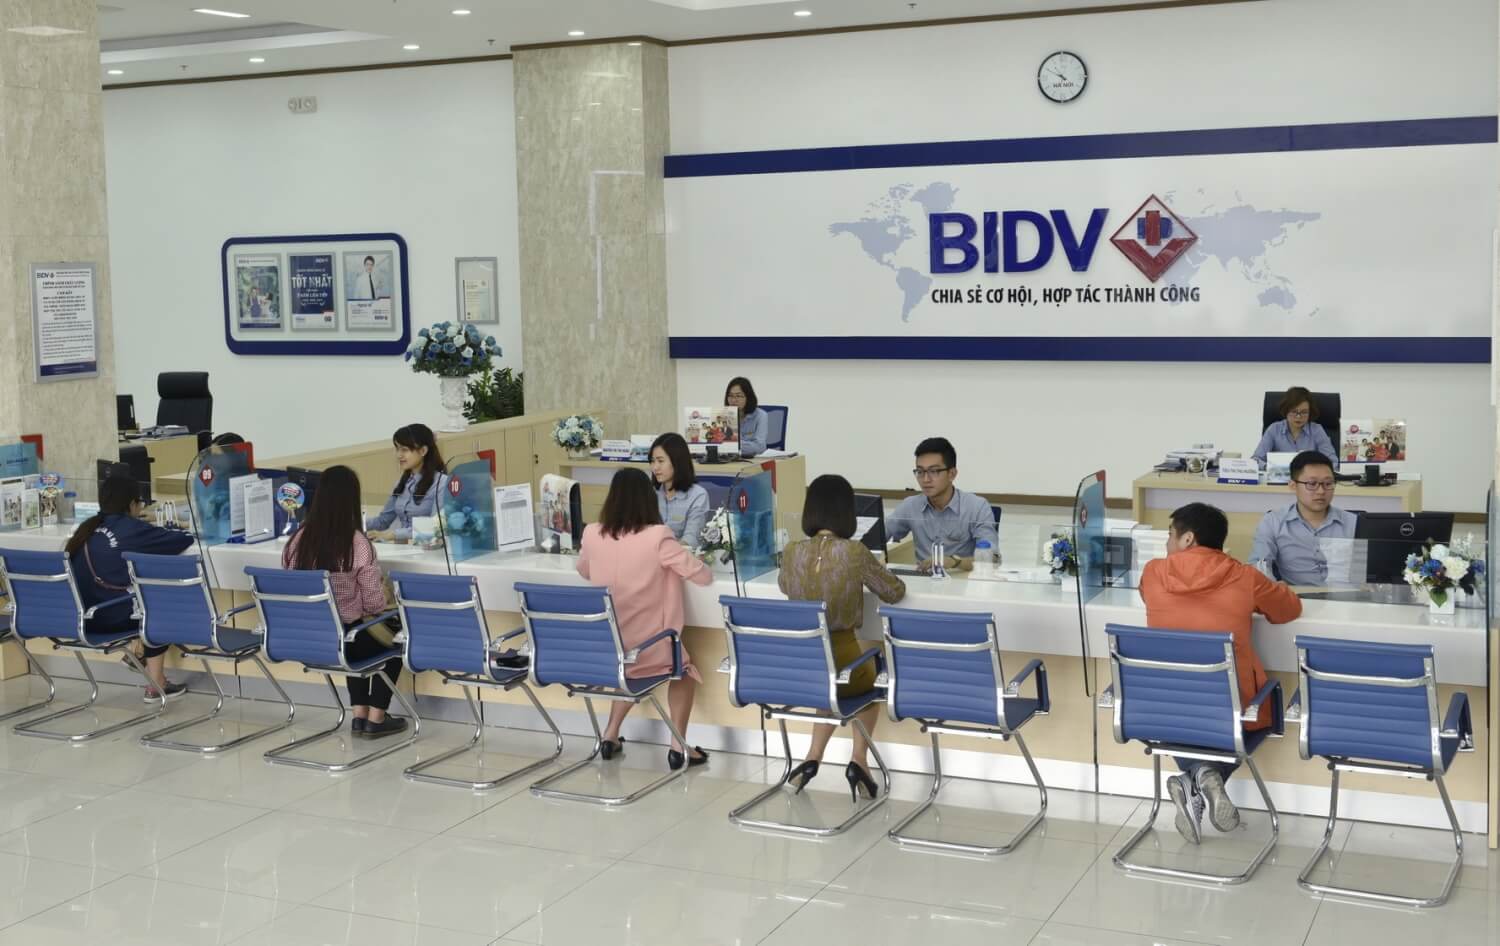 Lãi suất tiền gửi ngân hàng BIDV